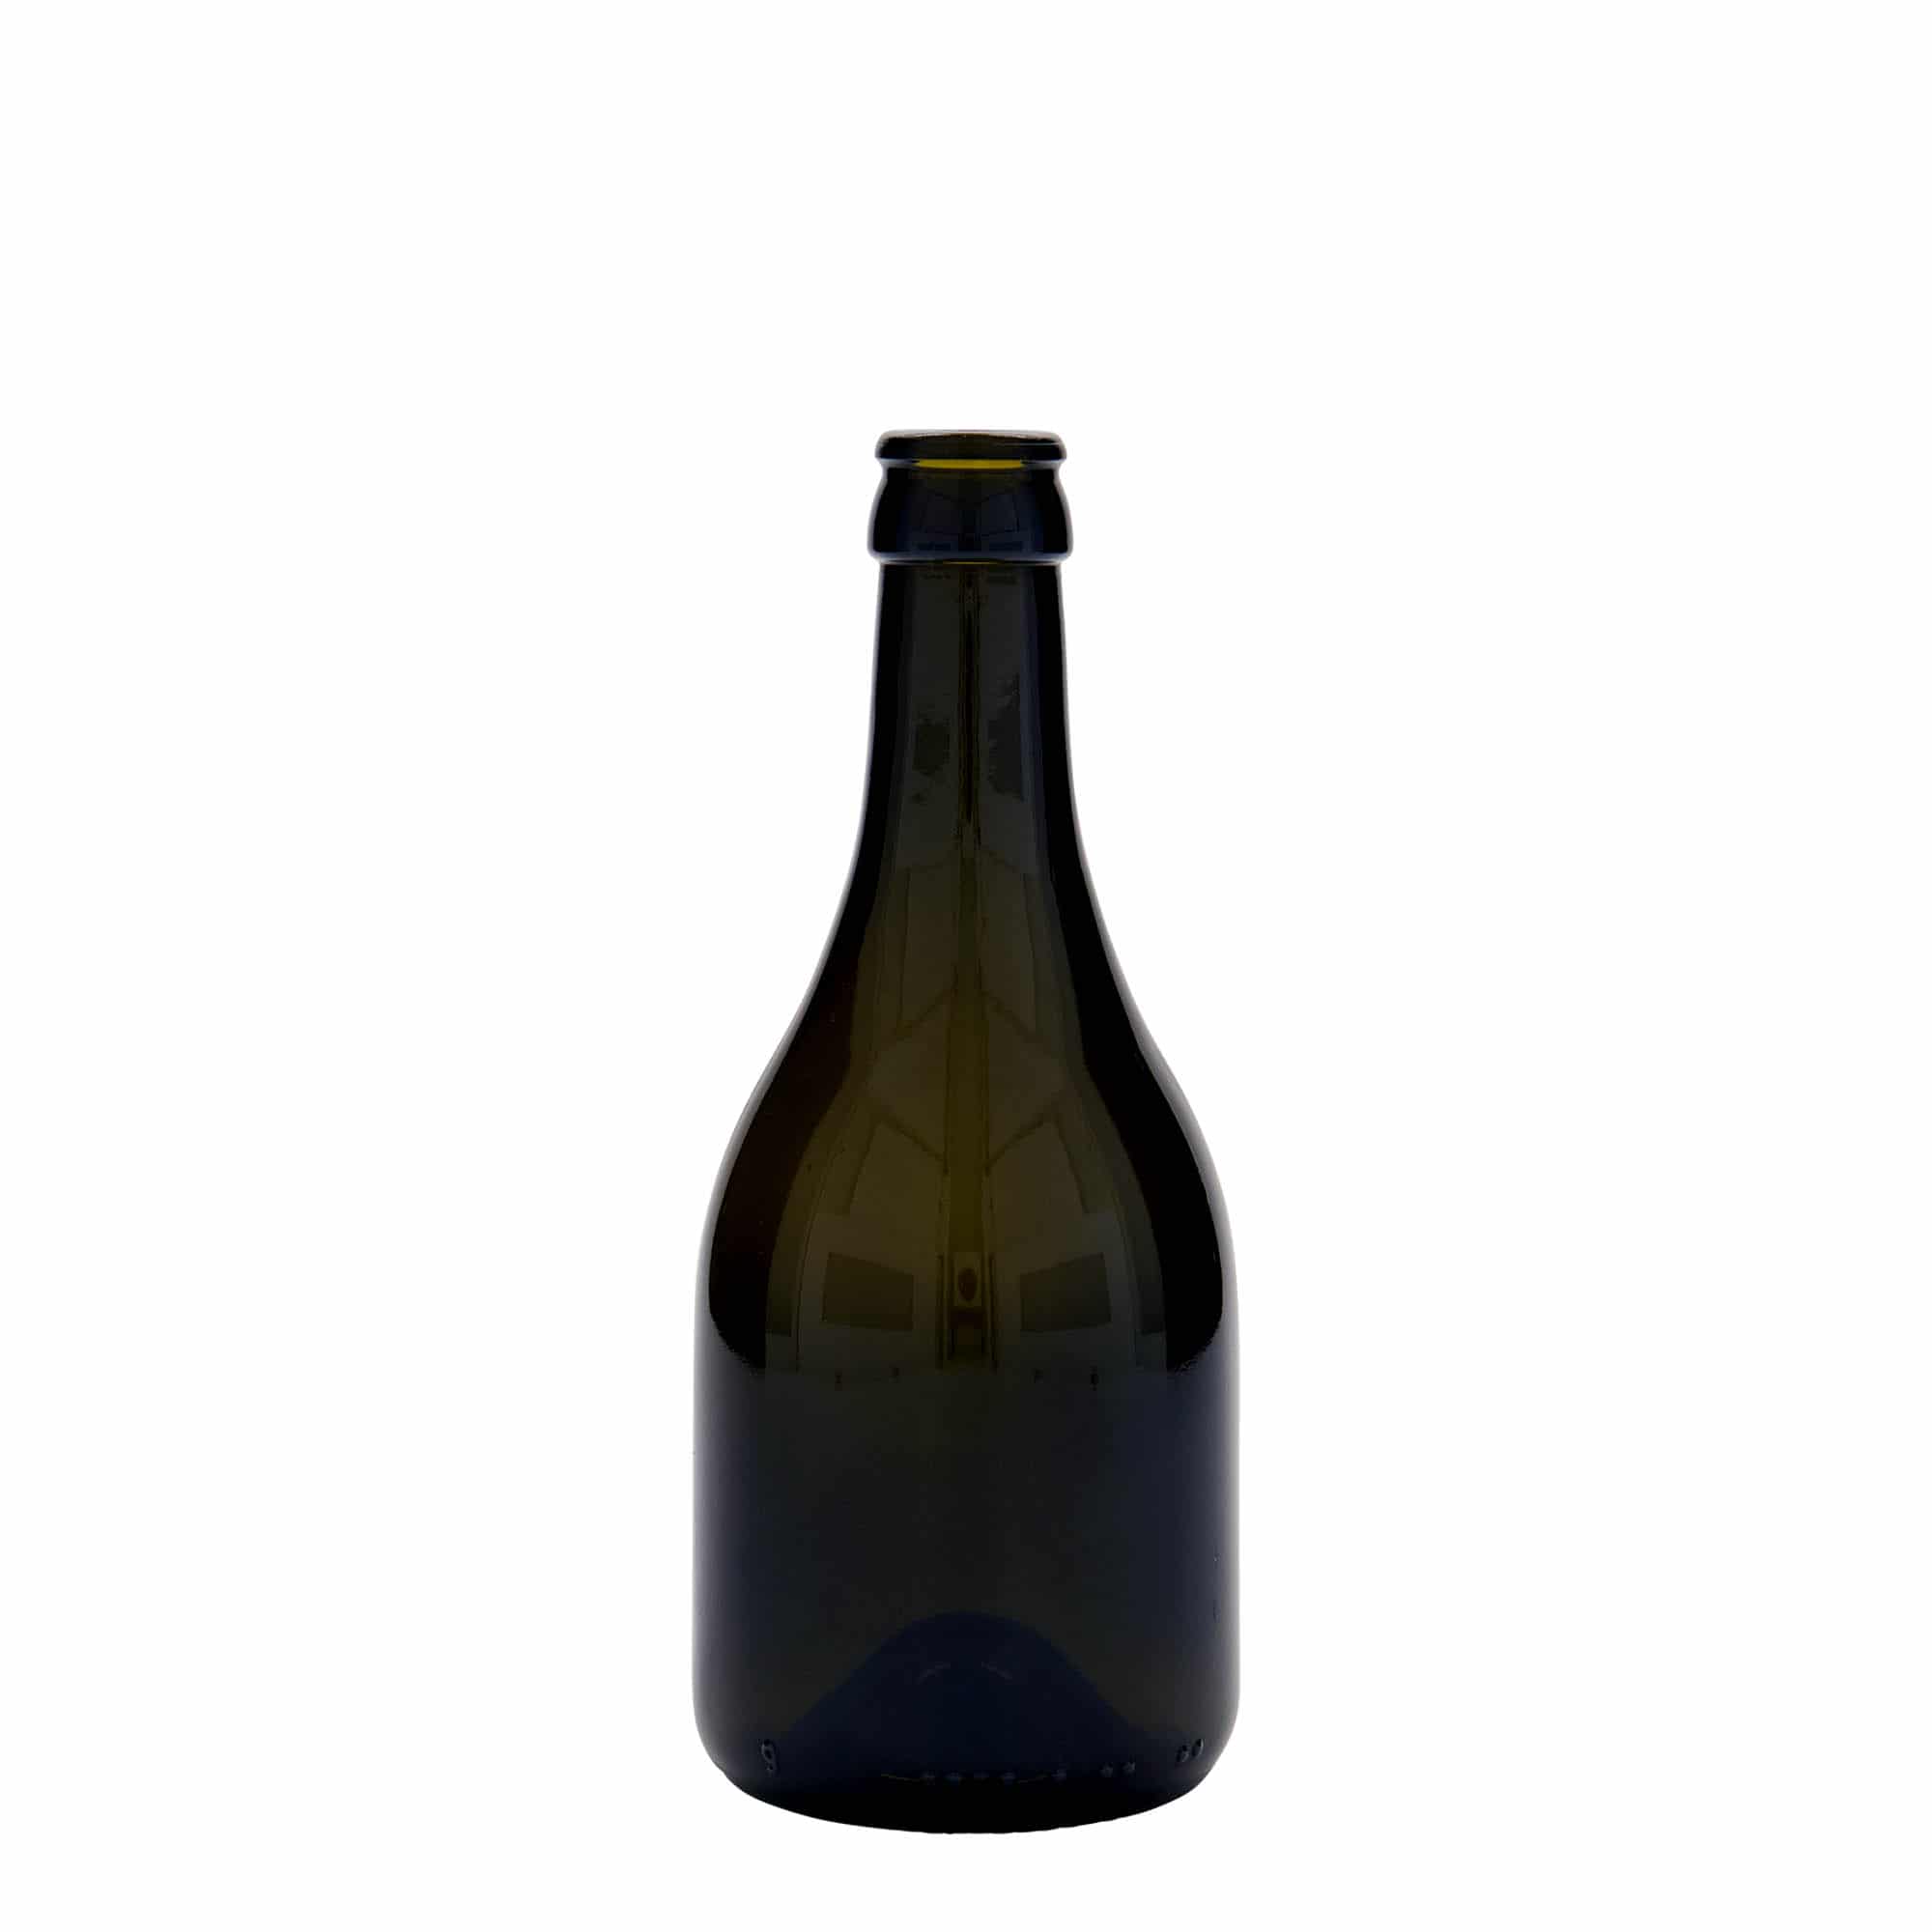 330 ml butelka do piwa 'Horta', szkło, kolor zielony antyczny, zamknięcie: kapsel